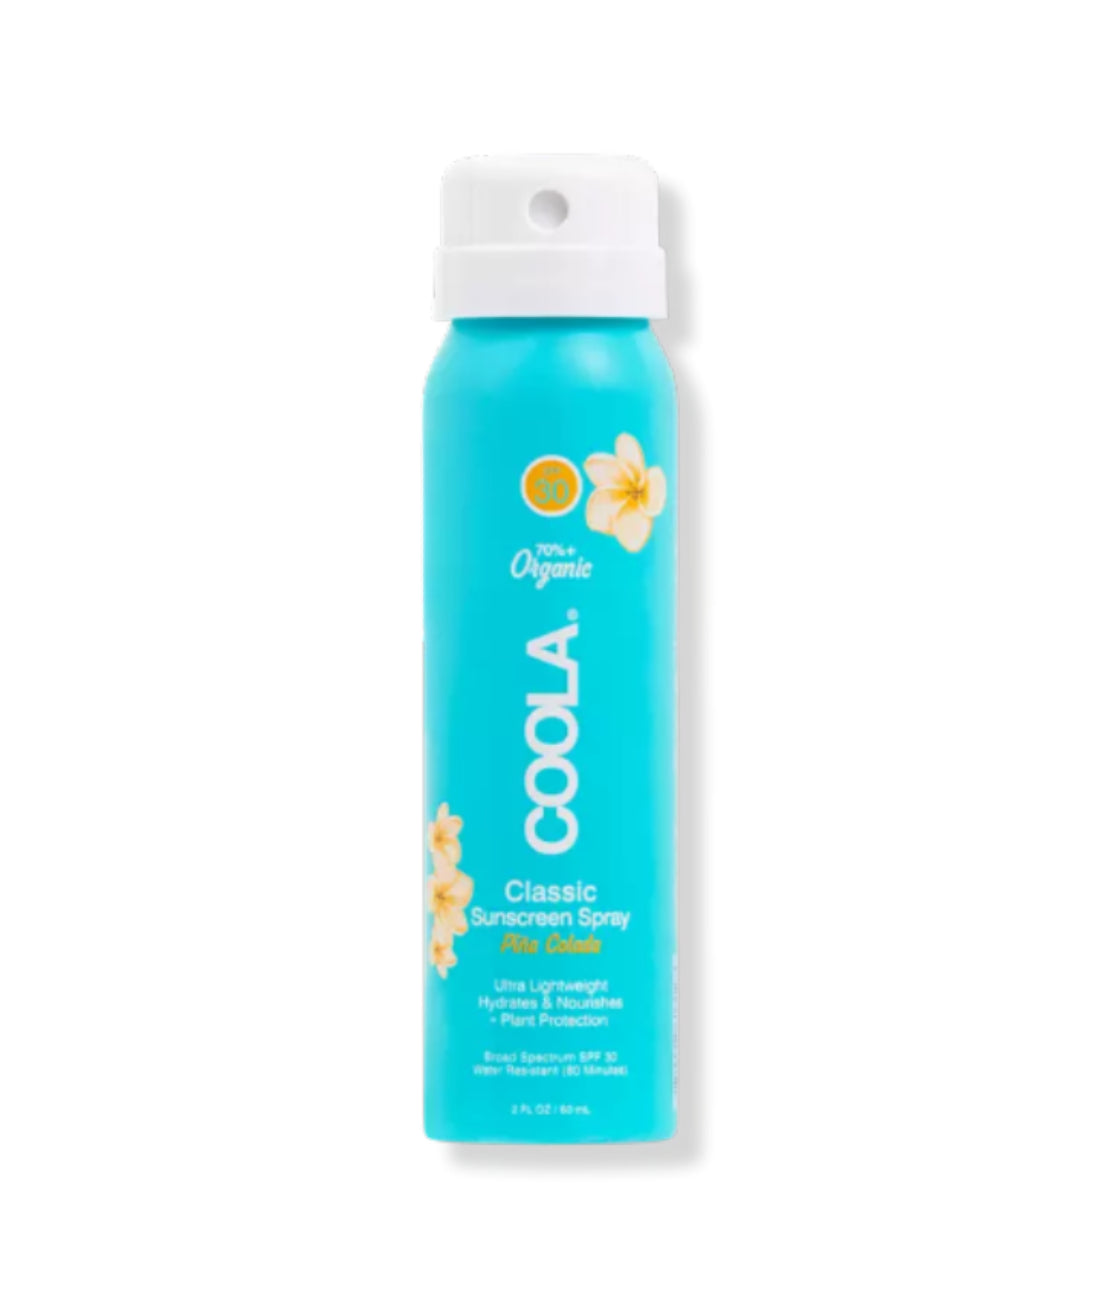 Coola Travel Classic Body Organic Sunscreen Spray SPF 30 - Piña Colada